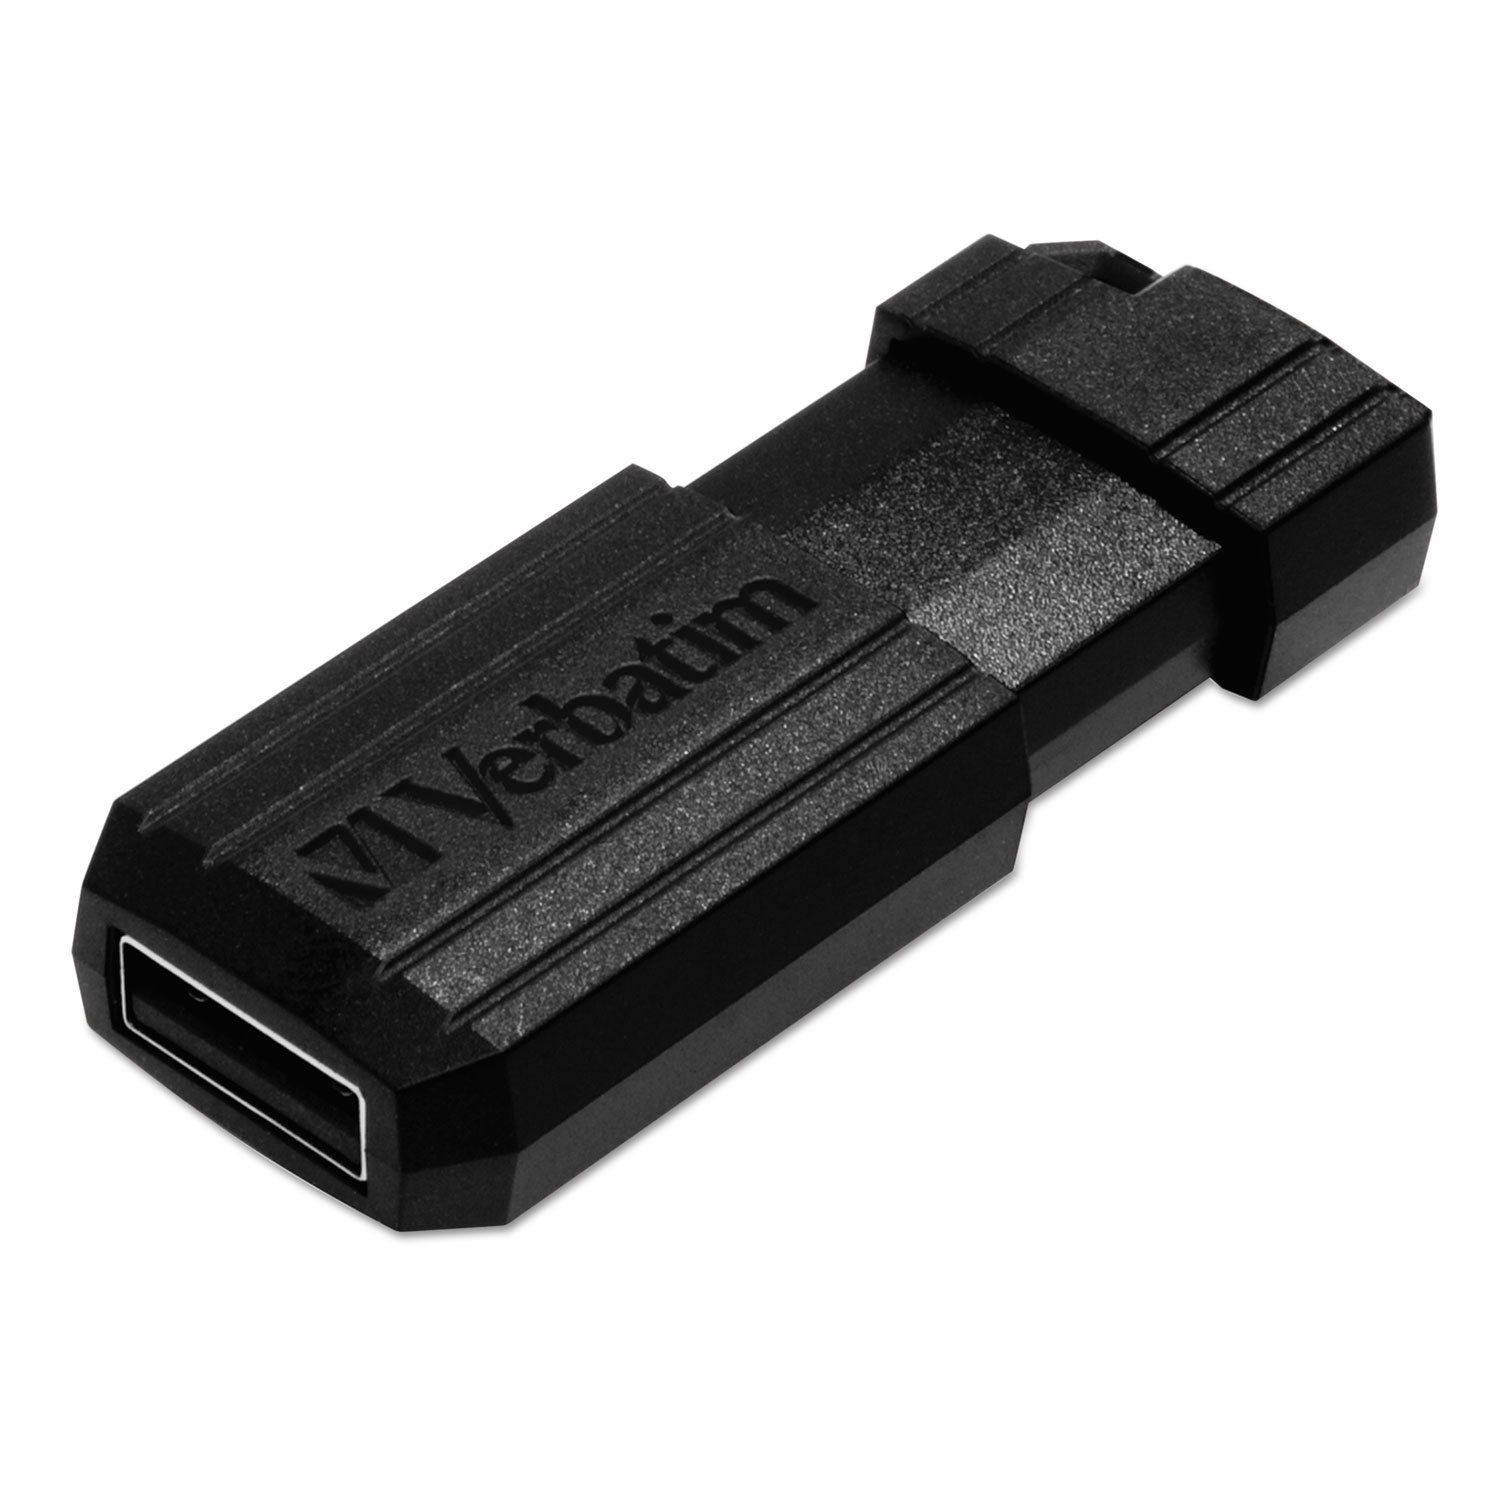 PinStripe USB Flash Drive, 16GB, Black